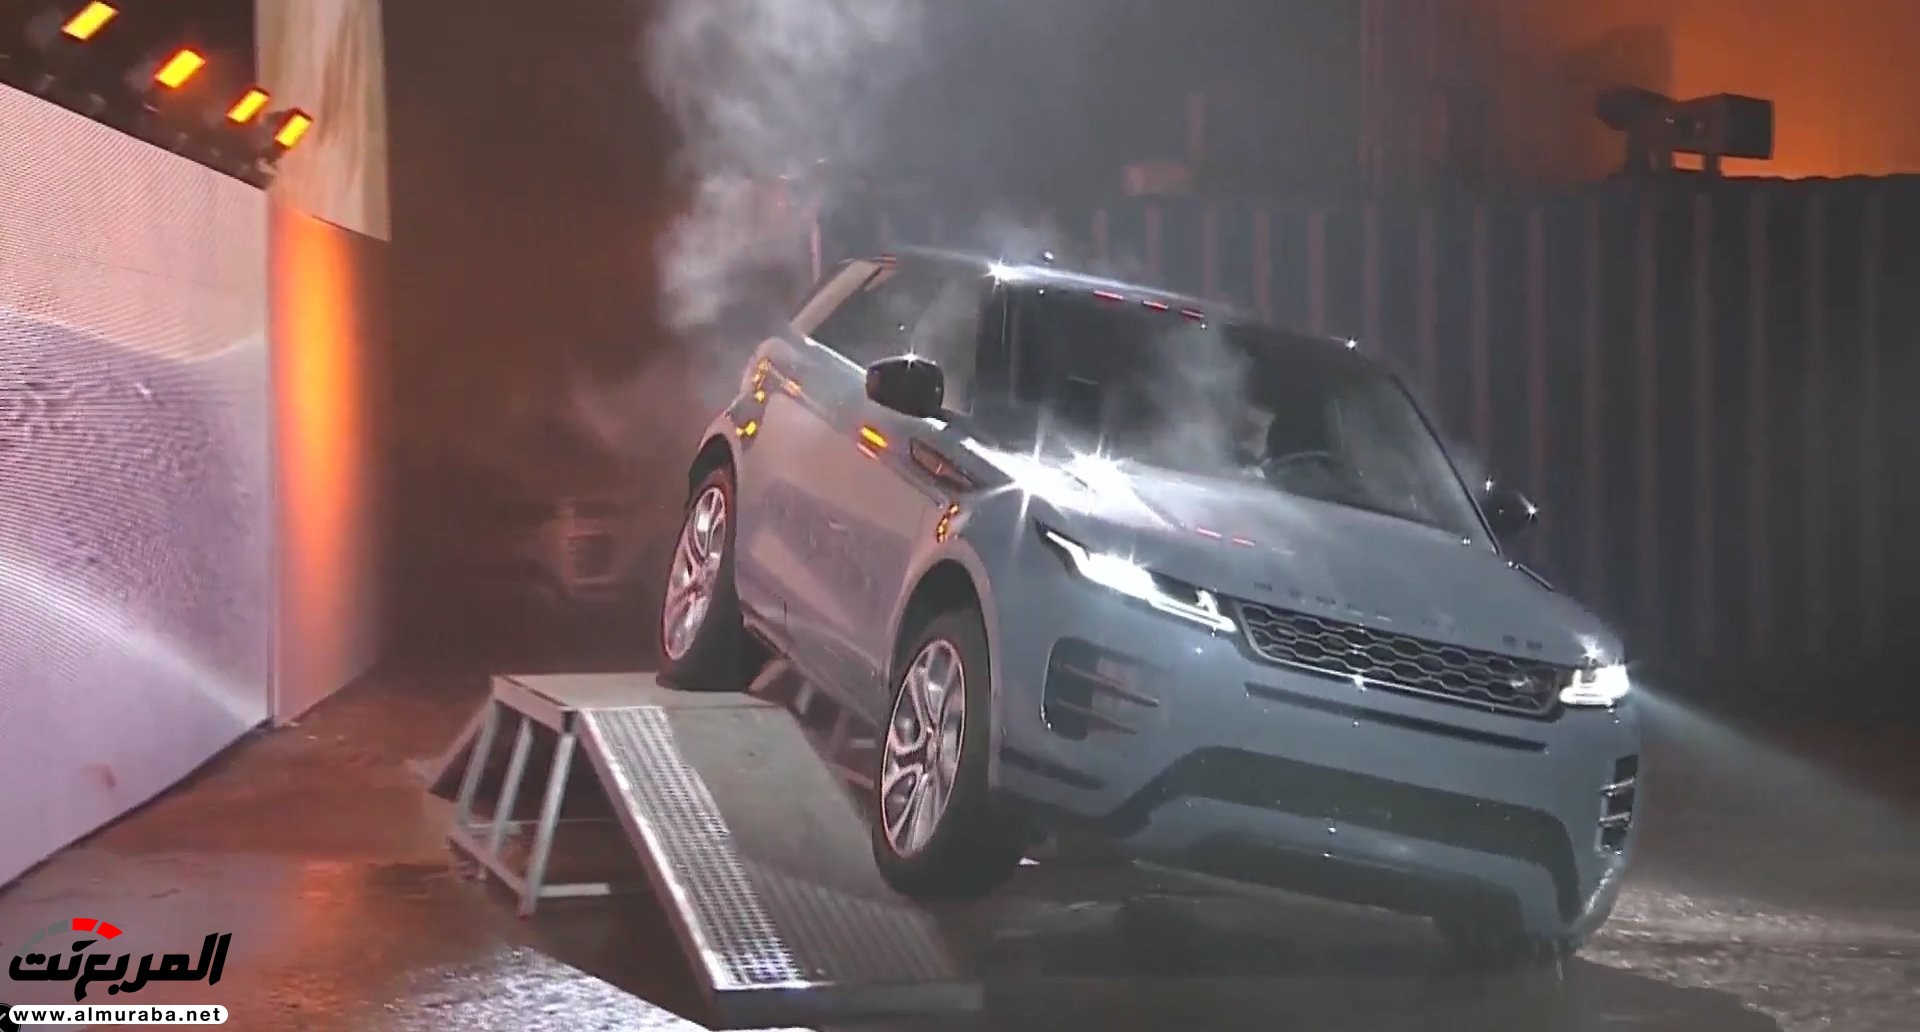 اهم 7 معلومات عن رنج روفر ايفوك 2020 الجديدة كلياً Range Rover Evoque 4